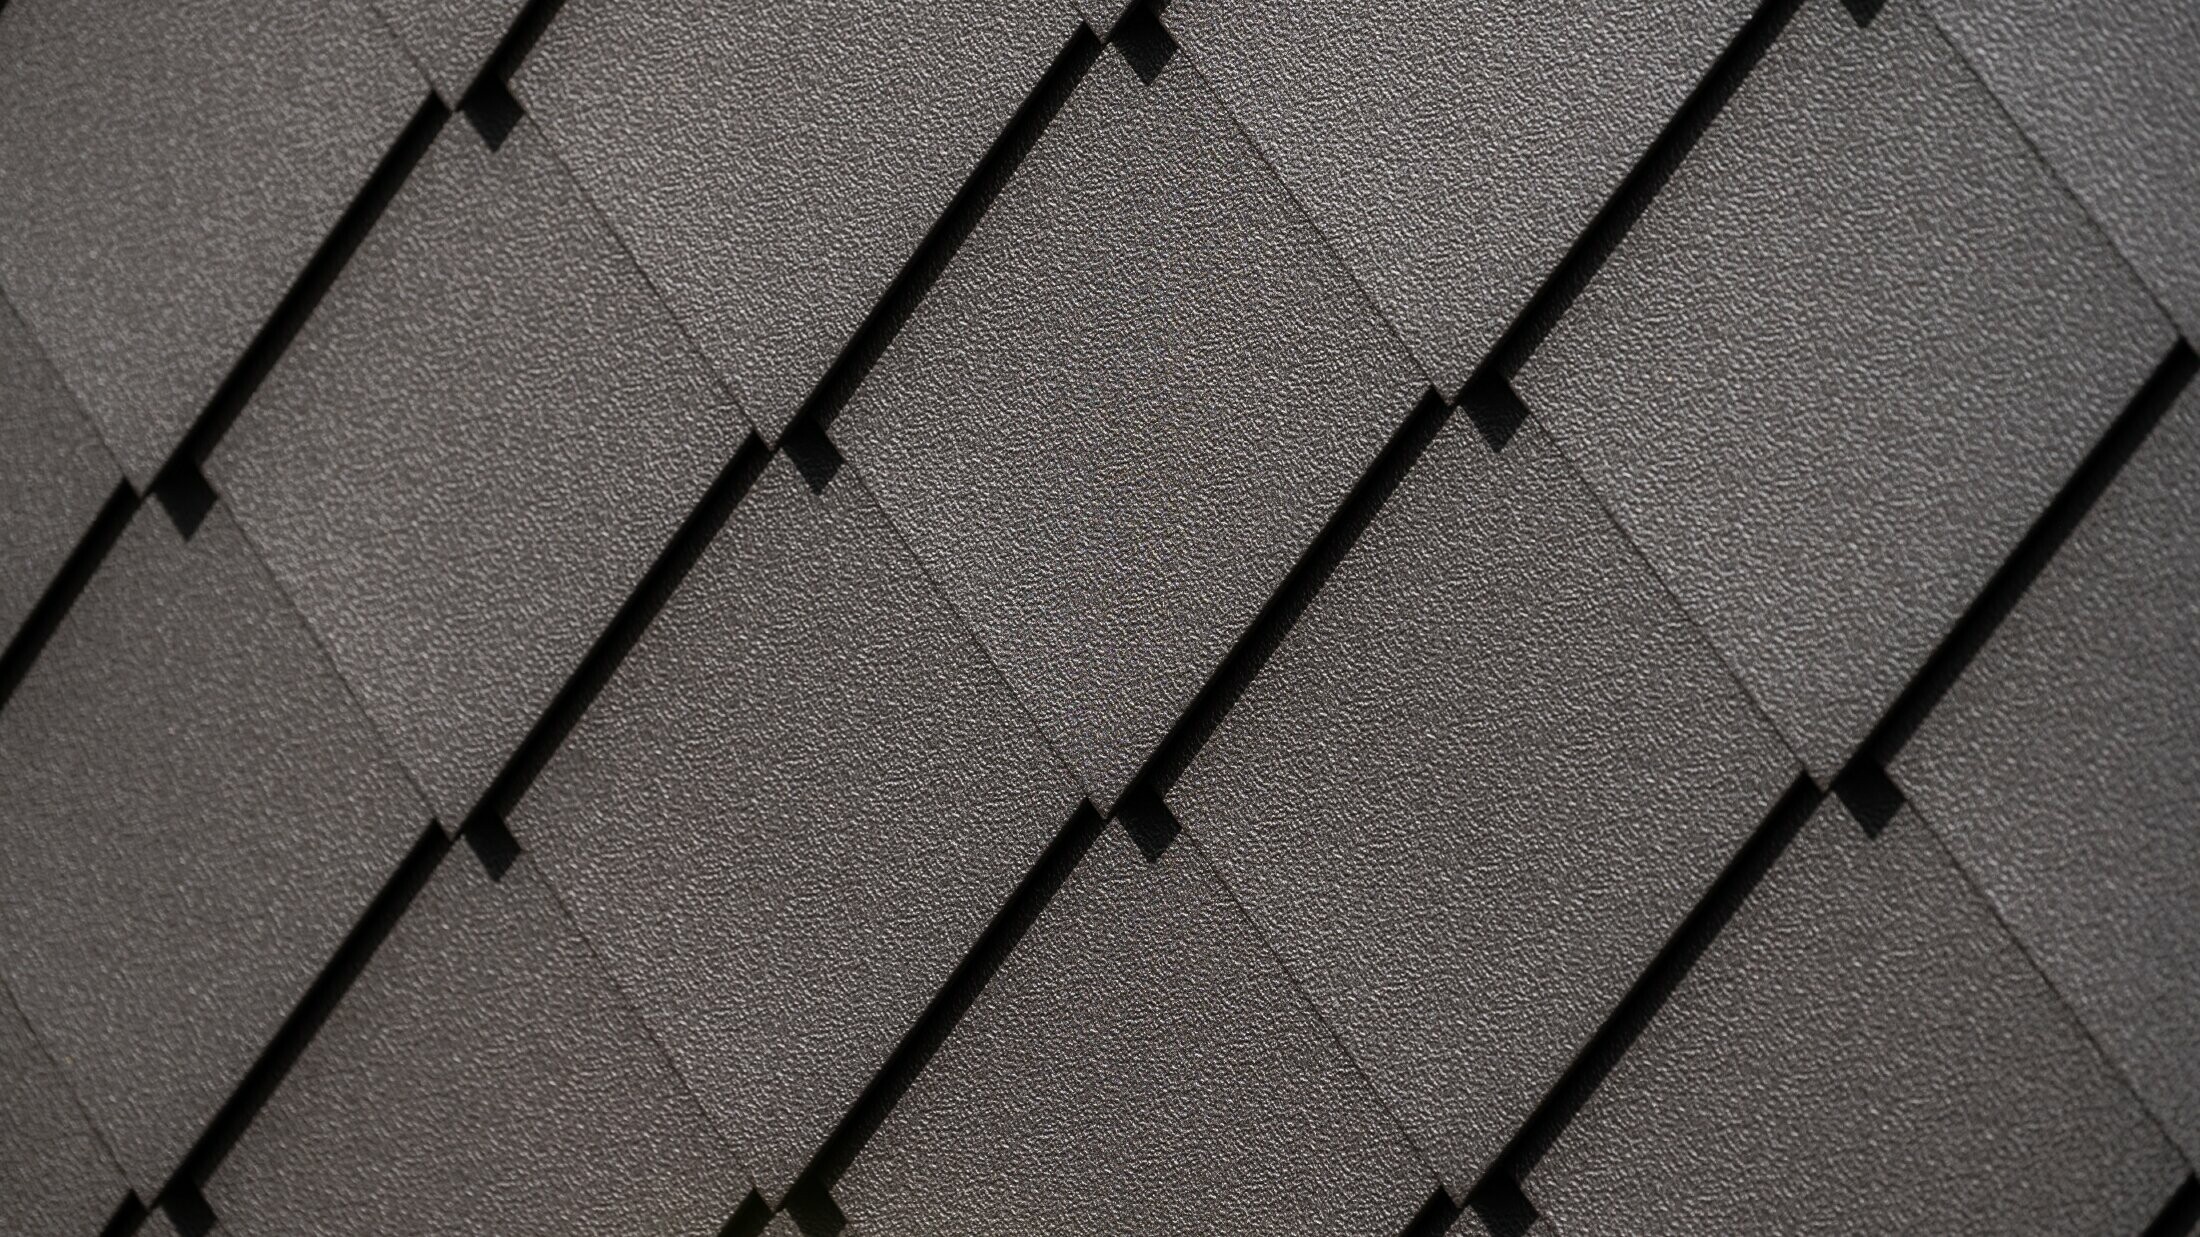 PREFA-vægrombe 29 × 29 i nøddebrun nærbillede med stucco-overflade